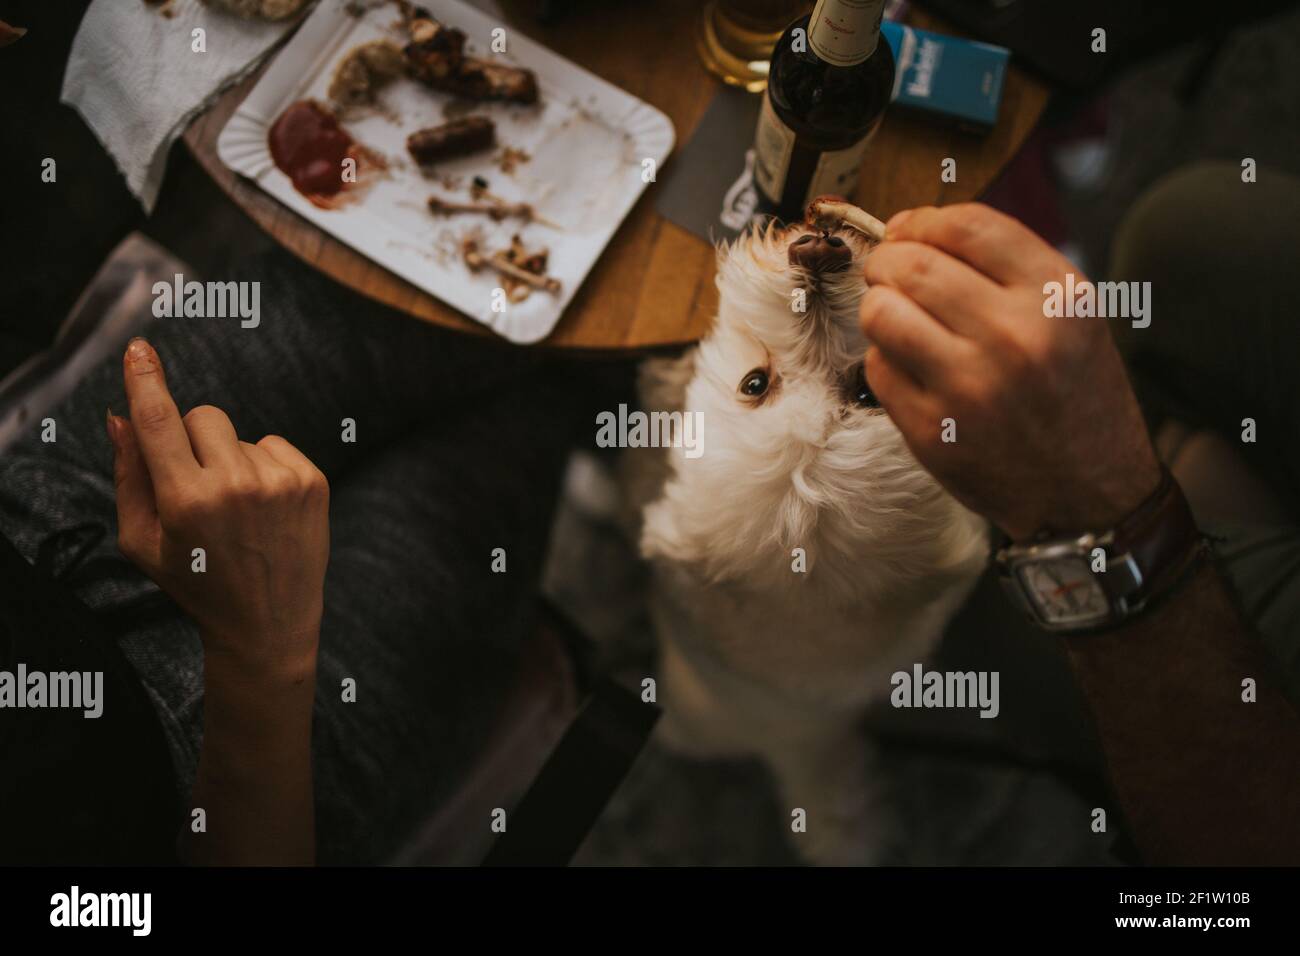 Nahaufnahme eines niedlichen weißen Hundes, der gefüttert wird Mit Essensresten von einem Mann neben einem Abendessen Tabelle Stockfoto